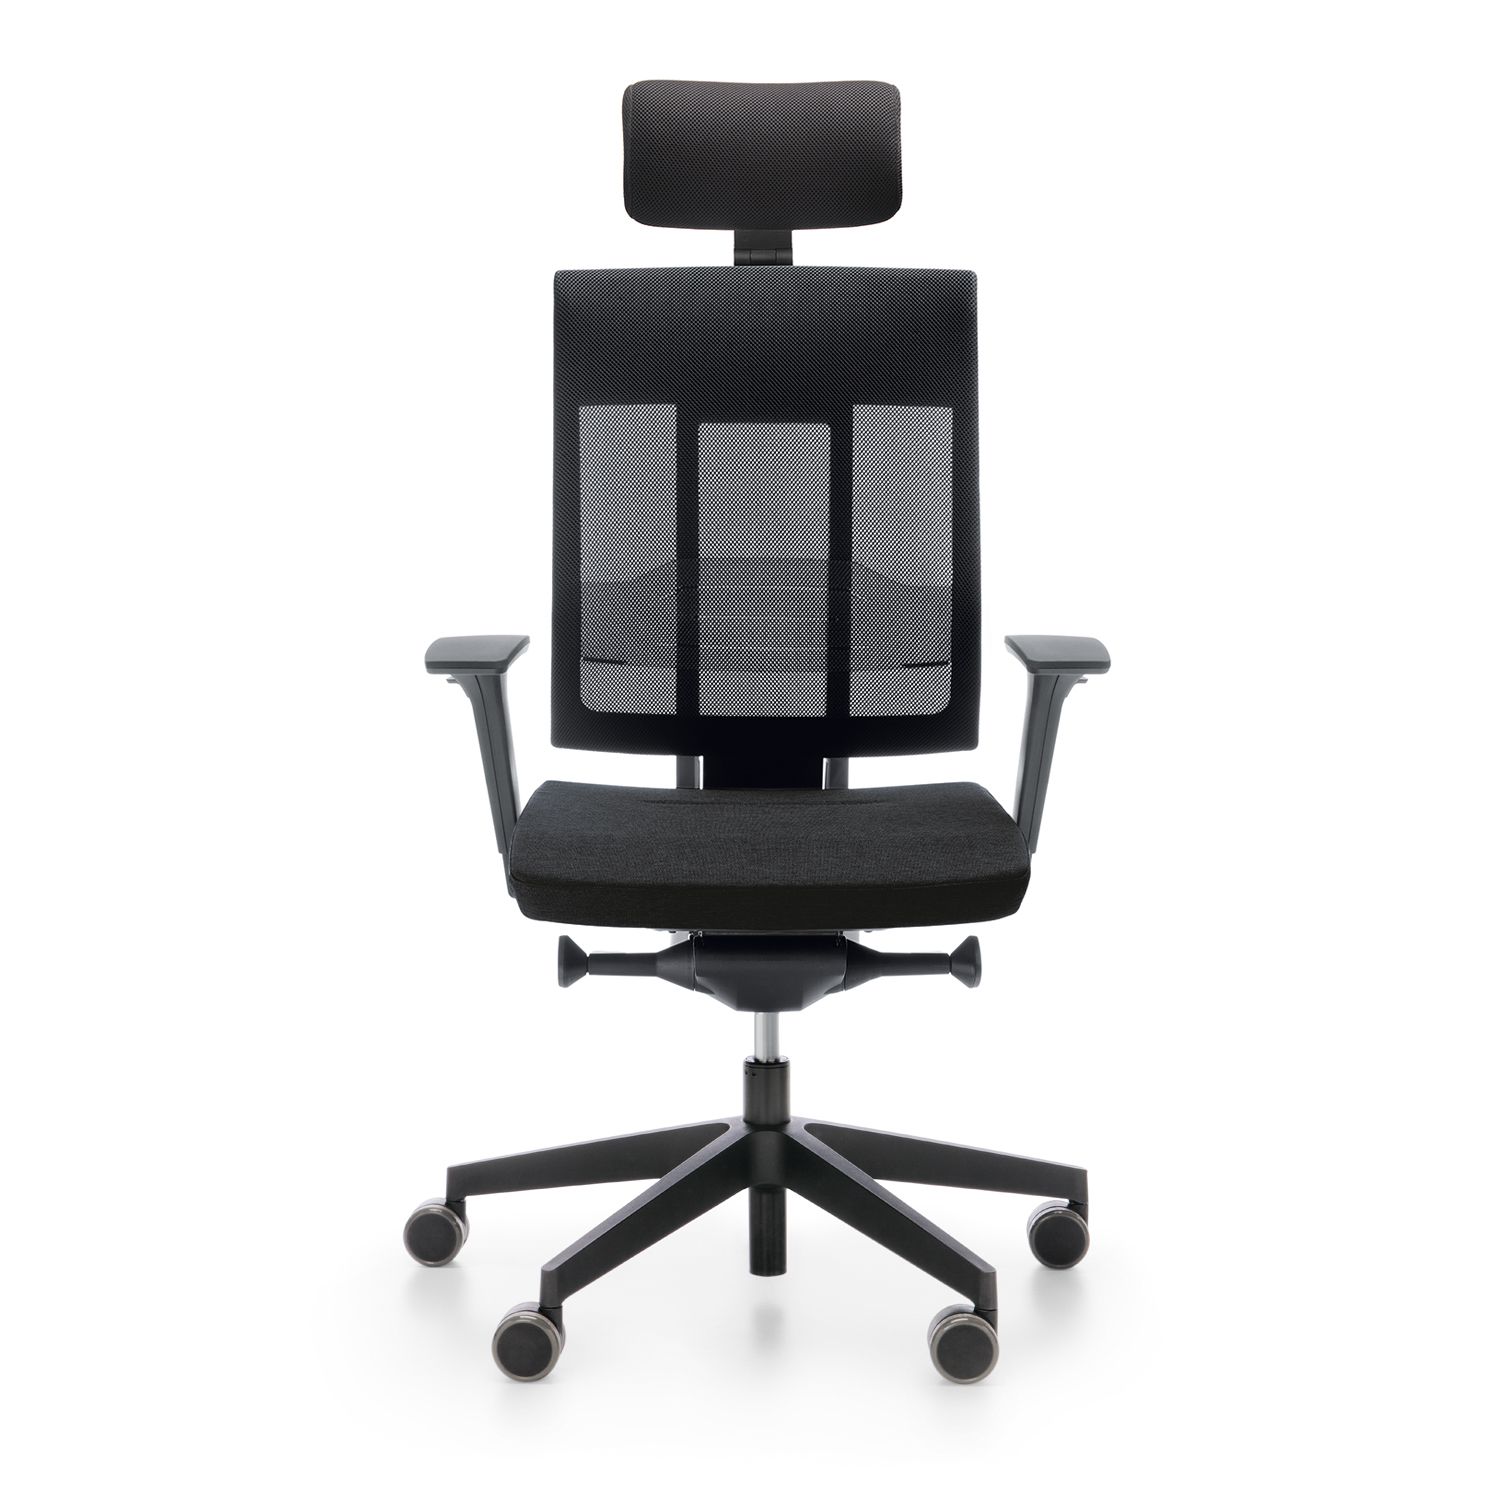 XENON NET To najnowocześniejsze krzesło pracownicze, które wyróżnia się innowacyjnymi funkcjami, takimi jak SmartADLS - innowacyjne podparcie odcinka lędźwiowego kręgosłupa oraz podłokietniki umożliwiające regulację nakładki w dowolnym kierunku w płaszczyźnie poziomej.